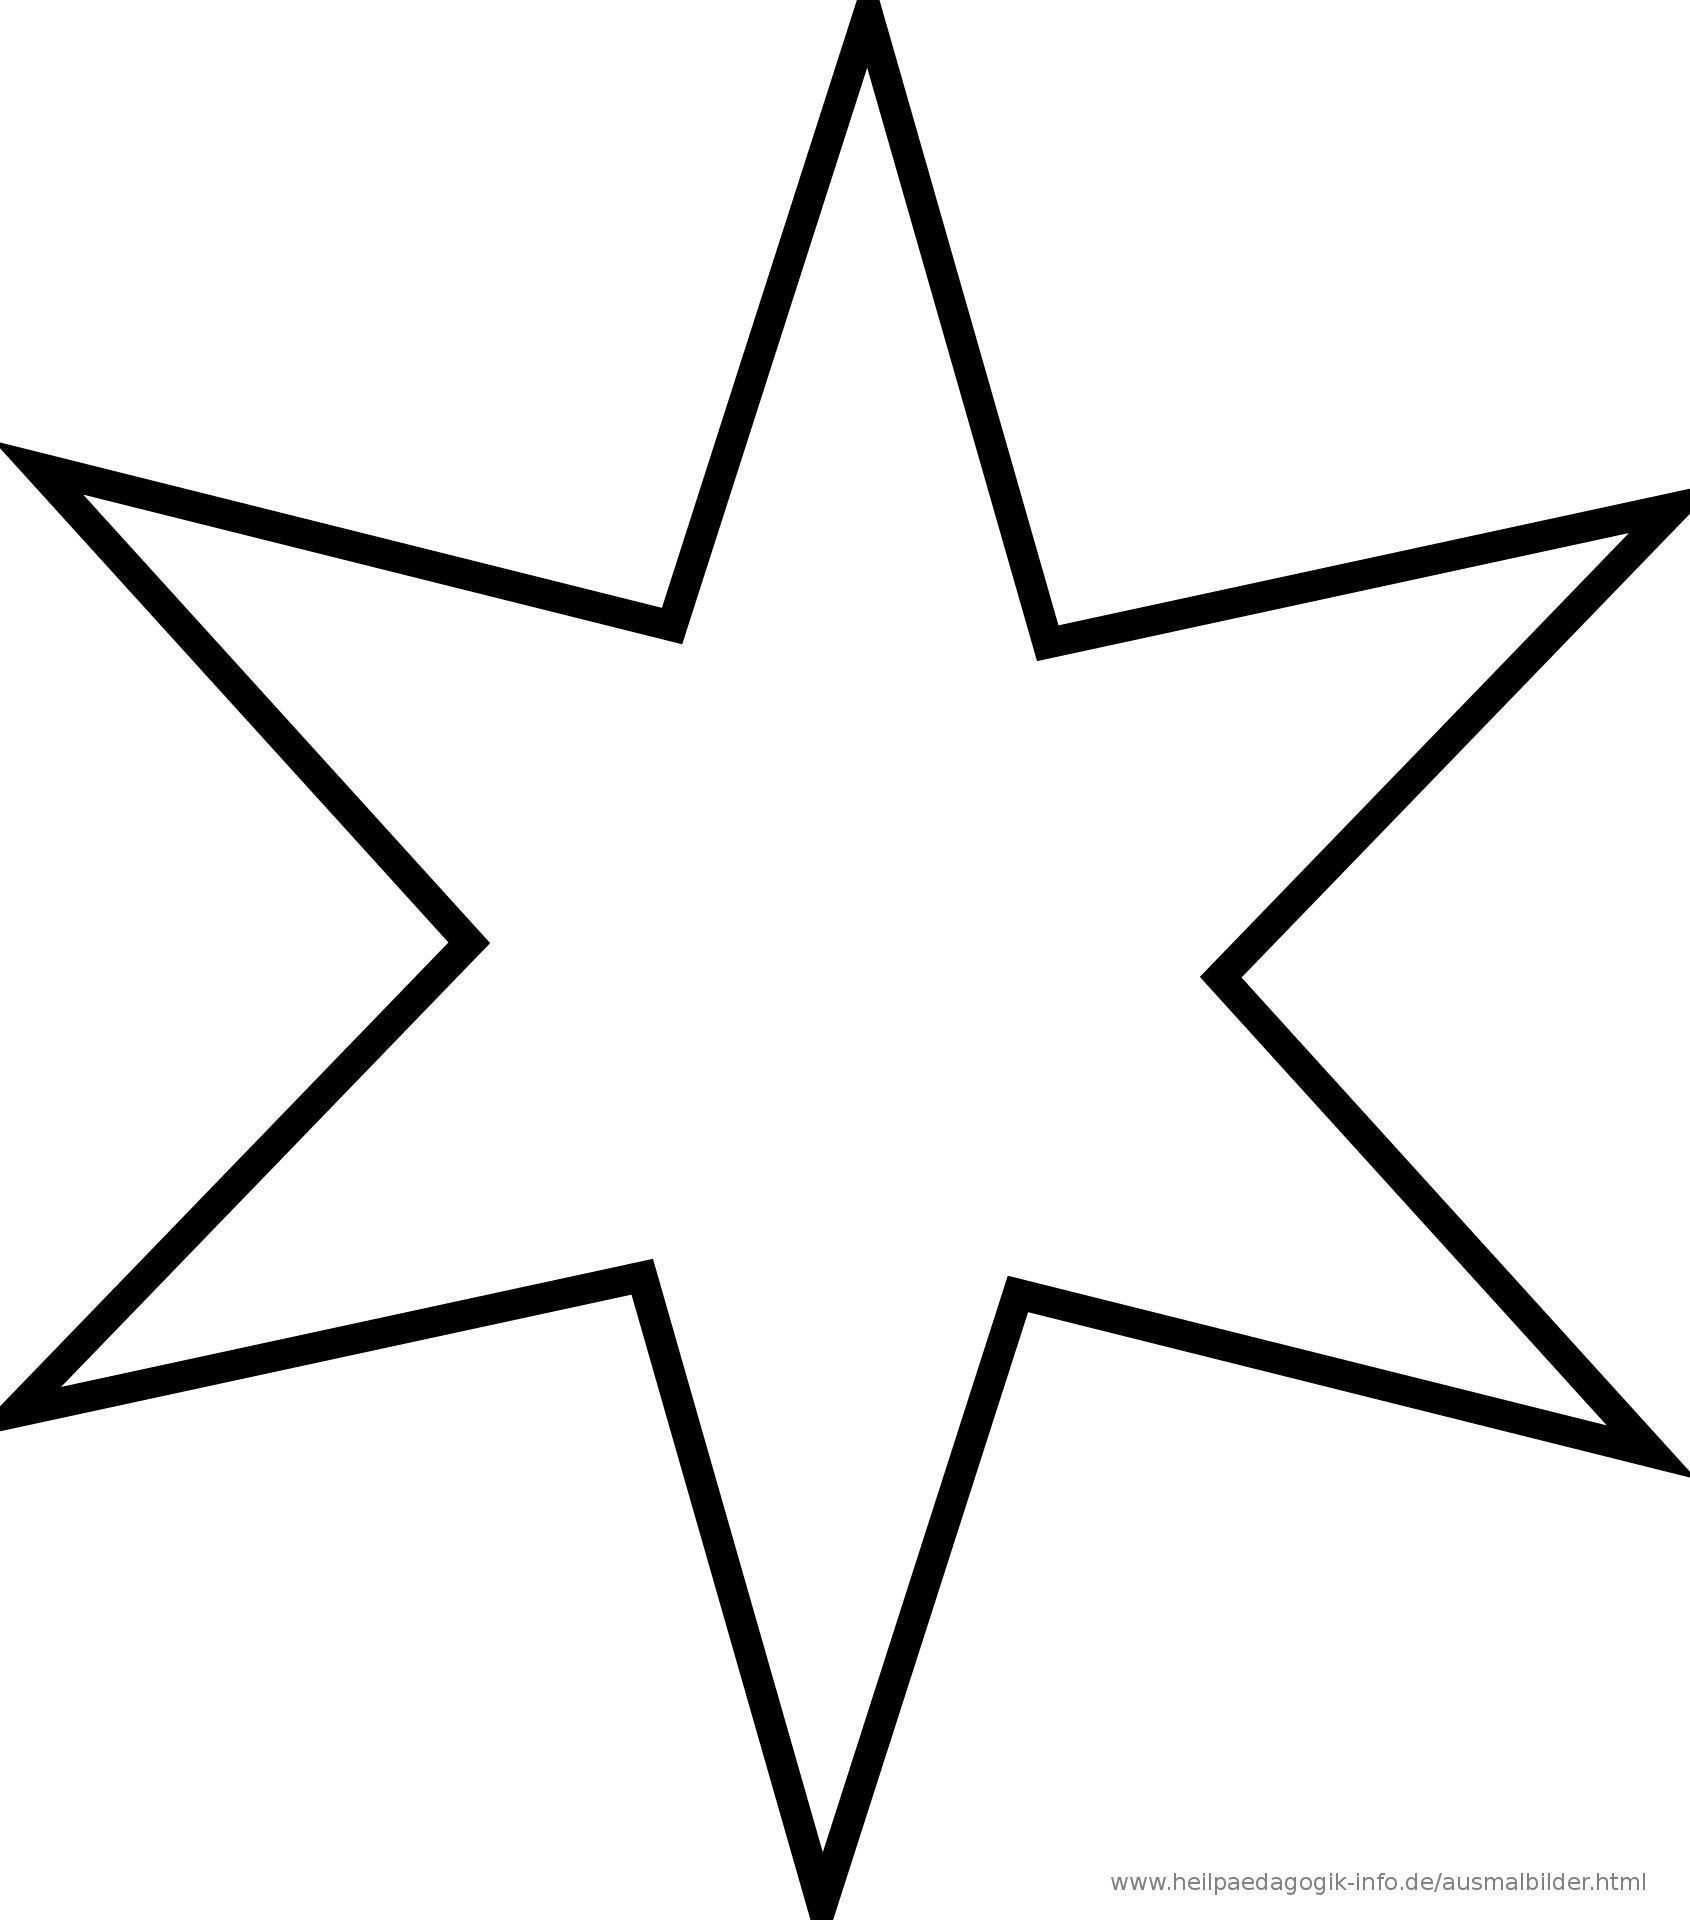 Pin Von Sarah Auf Malvorlagen Sterne Zum Ausdrucken Malvorlage Stern Vorlage Stern